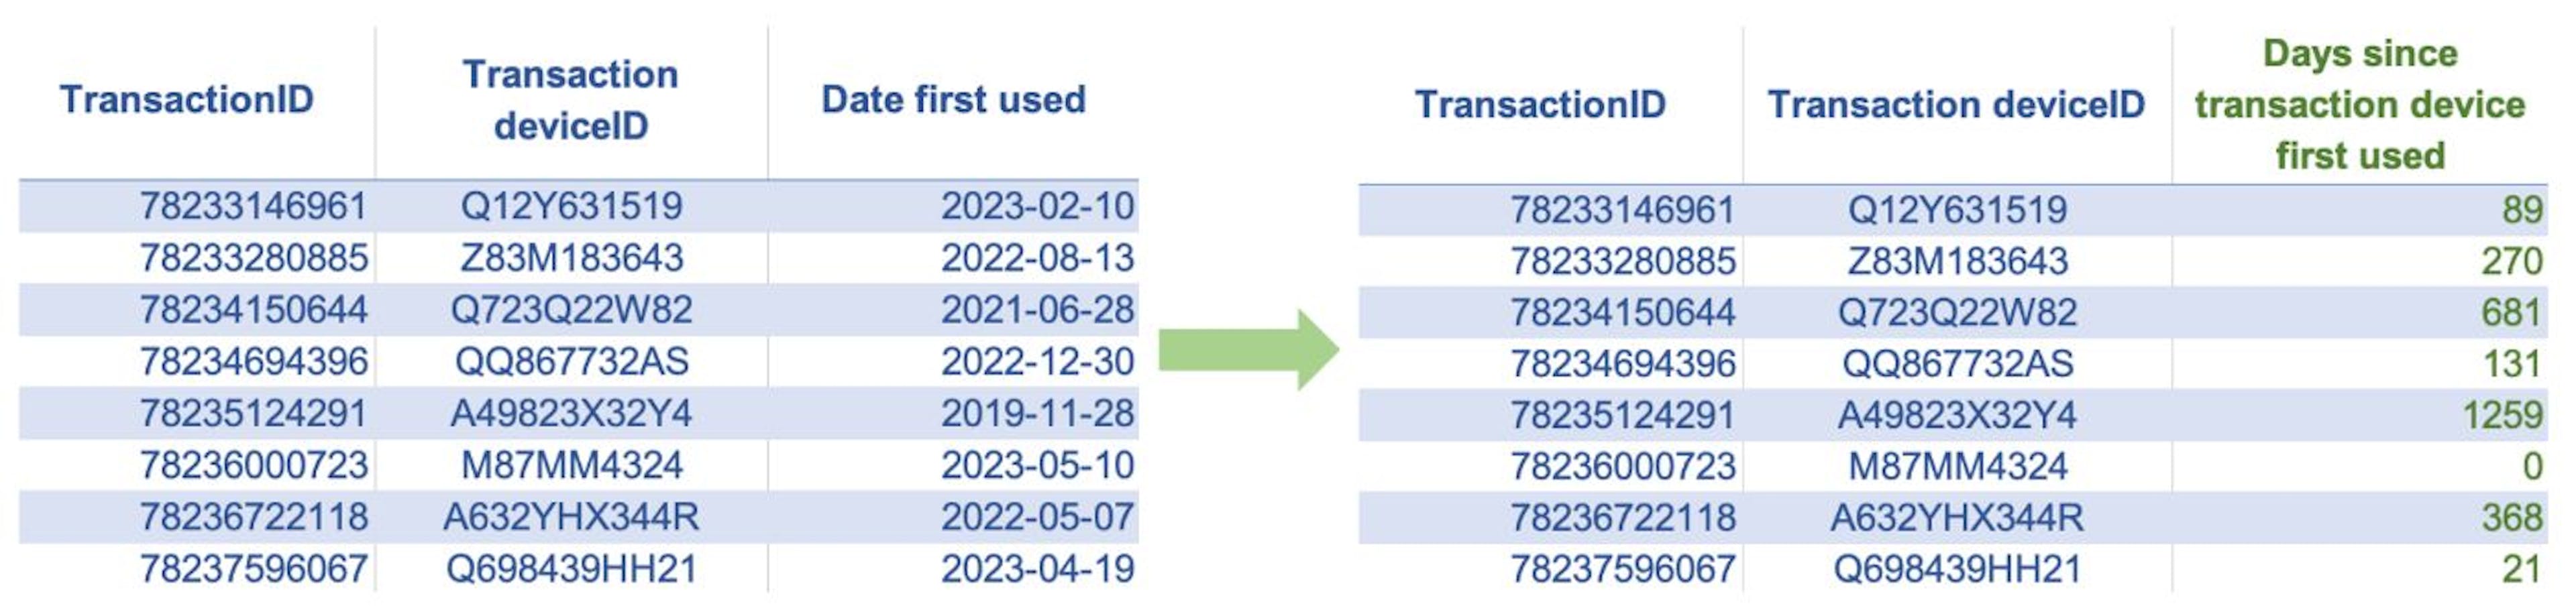 В таблицах выше показан пример кодирования возраста. Здесь мы создали новую числовую функцию «Дни с момента первого использования устройства транзакции» как разницу в днях между датой первого использования устройства клиента и текущей датой транзакции.